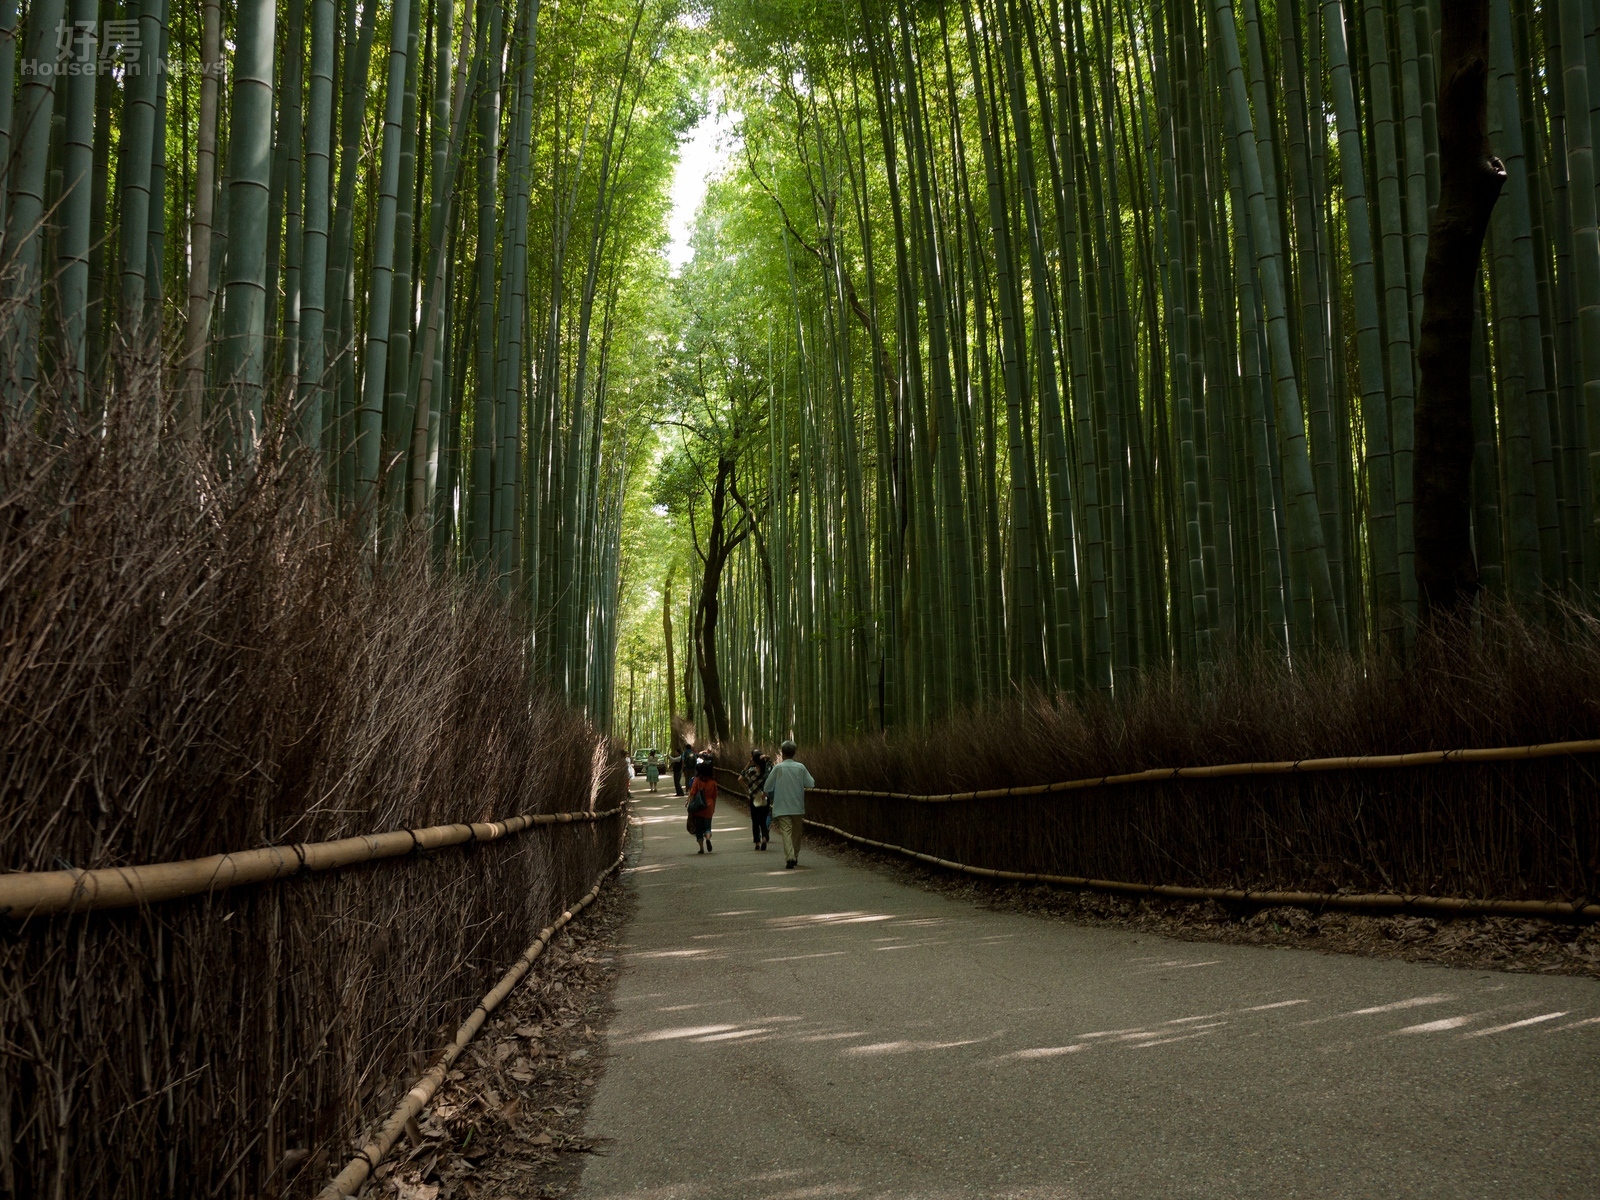 京都嵐山天龍寺 春夏秋冬各不同 到天龍寺必須經過 竹林之道 兩旁的竹子高聳入天 這也是嵐山一帶十分著名的景點 許多日劇都在此取景過 圖輯